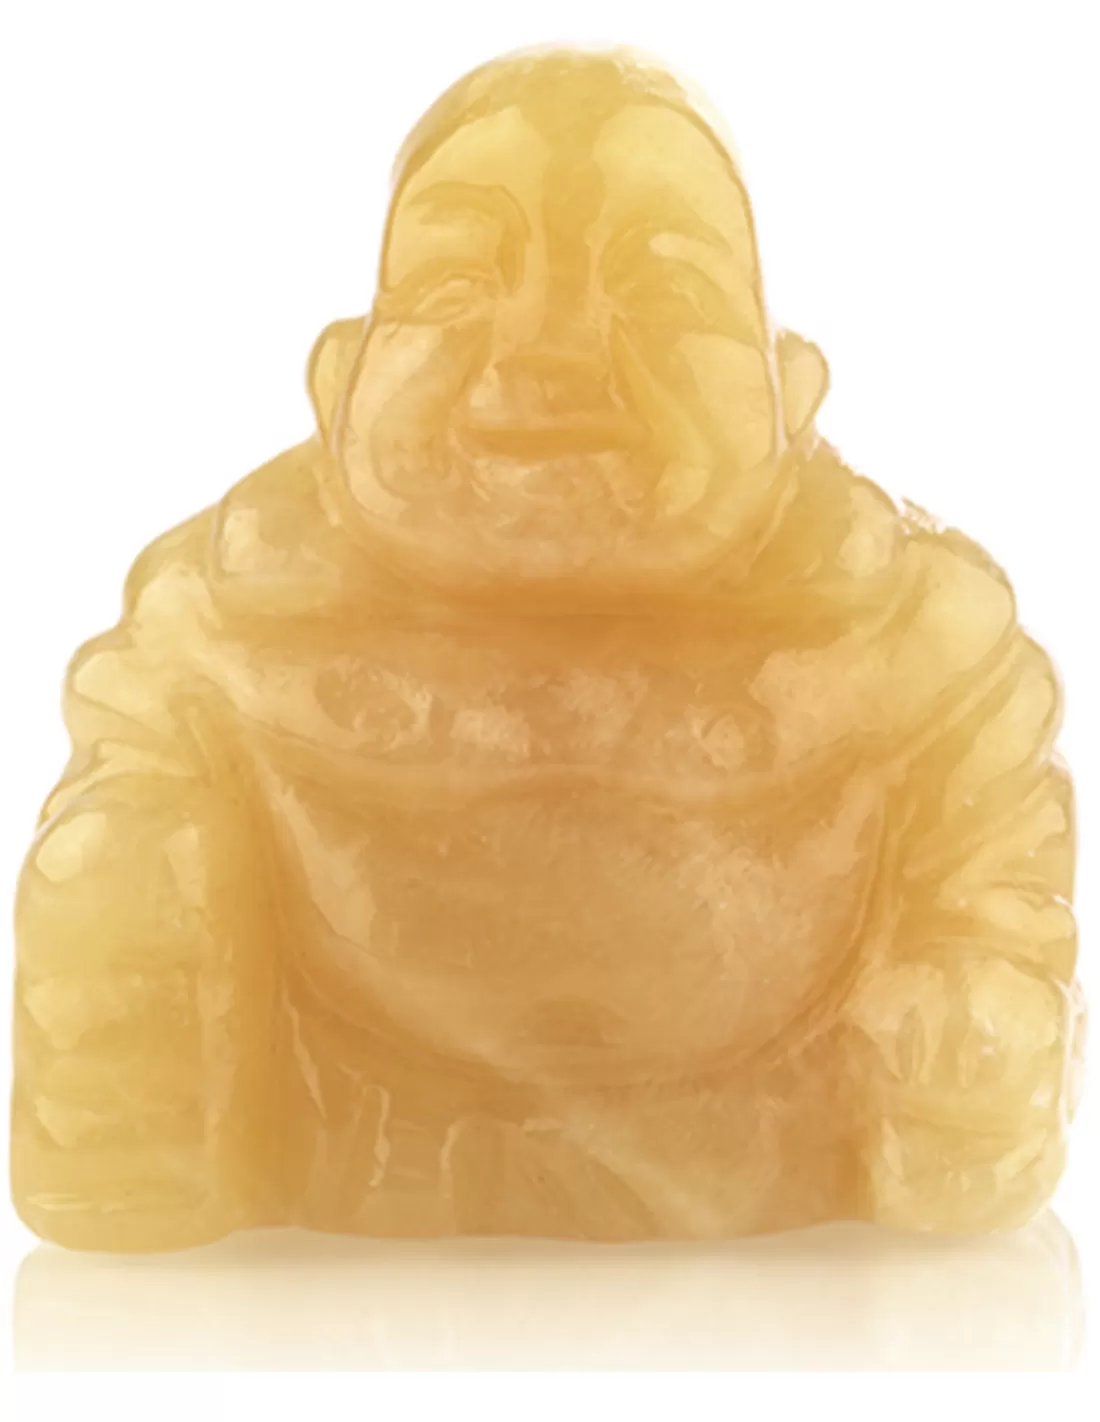 Edelsteen Boeddha Calciet geel 50 mm